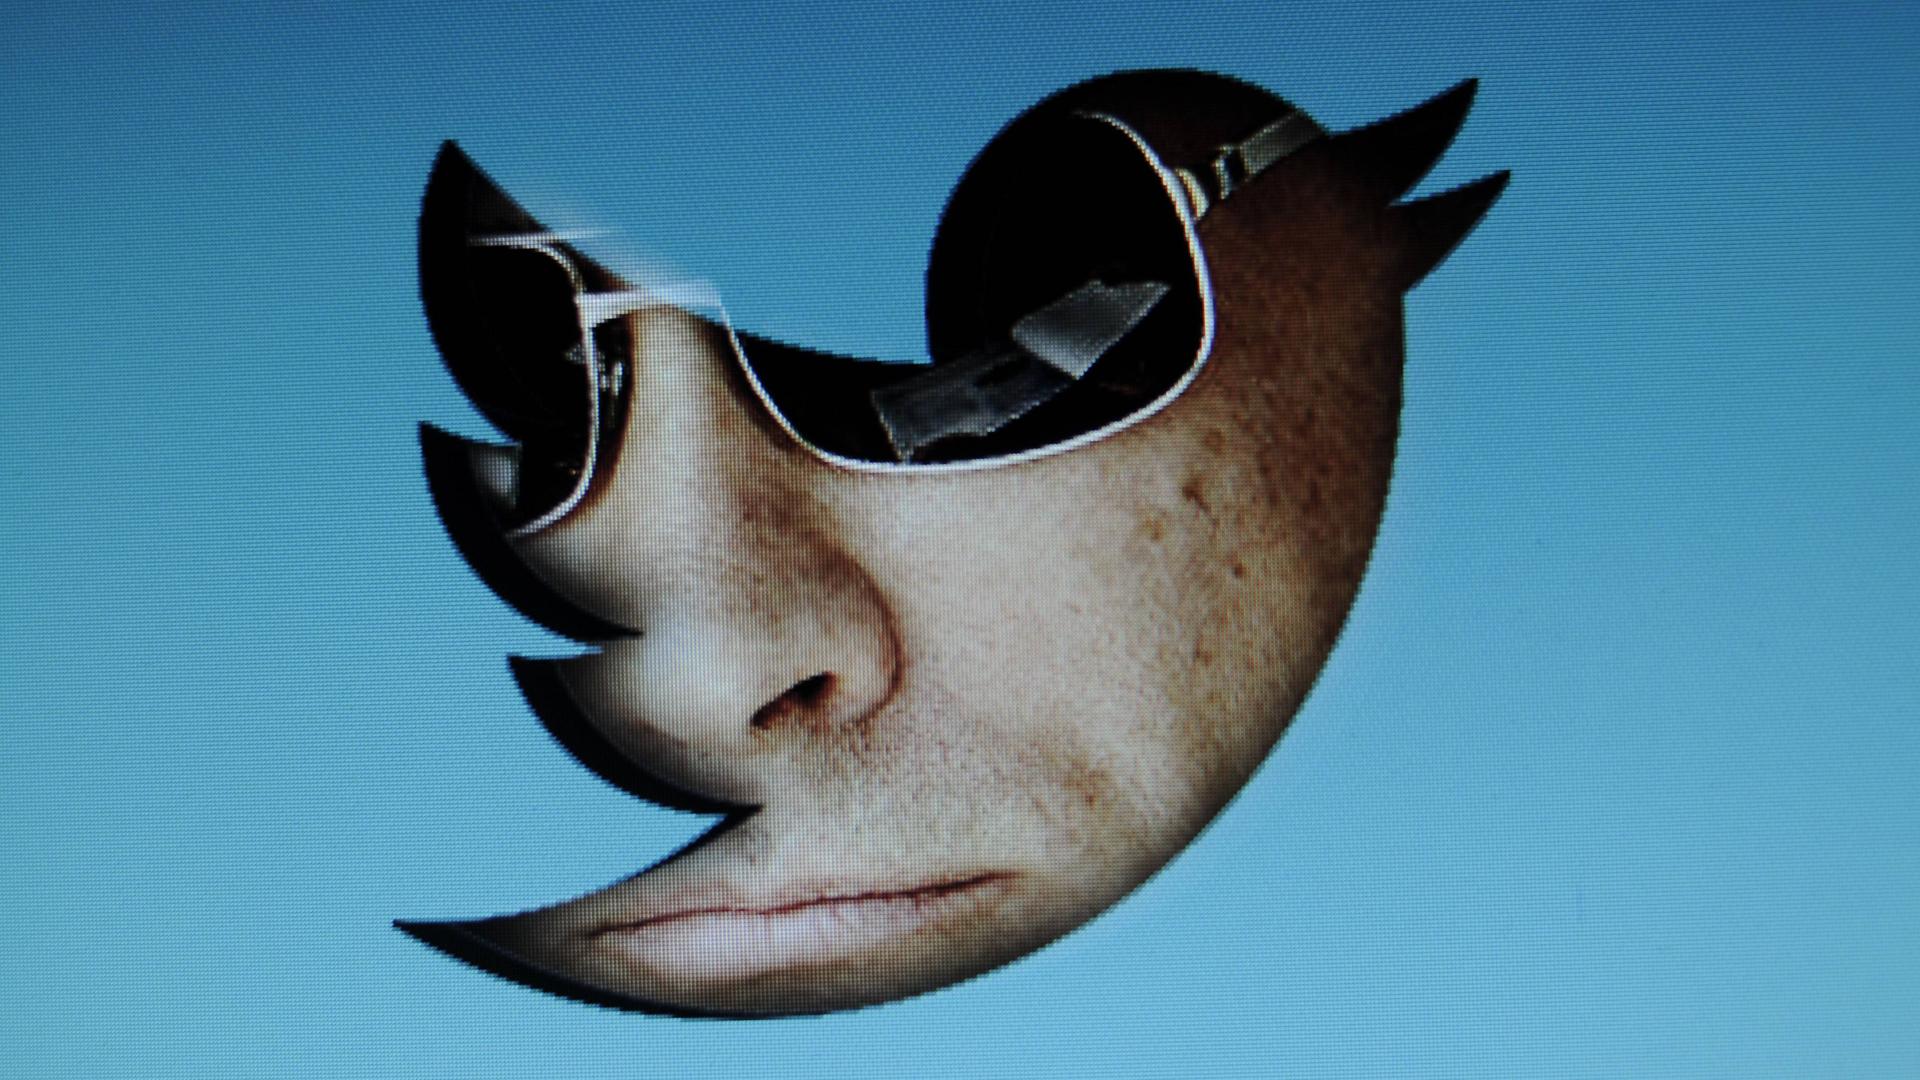 Ein Porträt von Wladimir Putin mit Sonnenbrille, das in den Umriss des Twitter-Logos eingefügt ist.